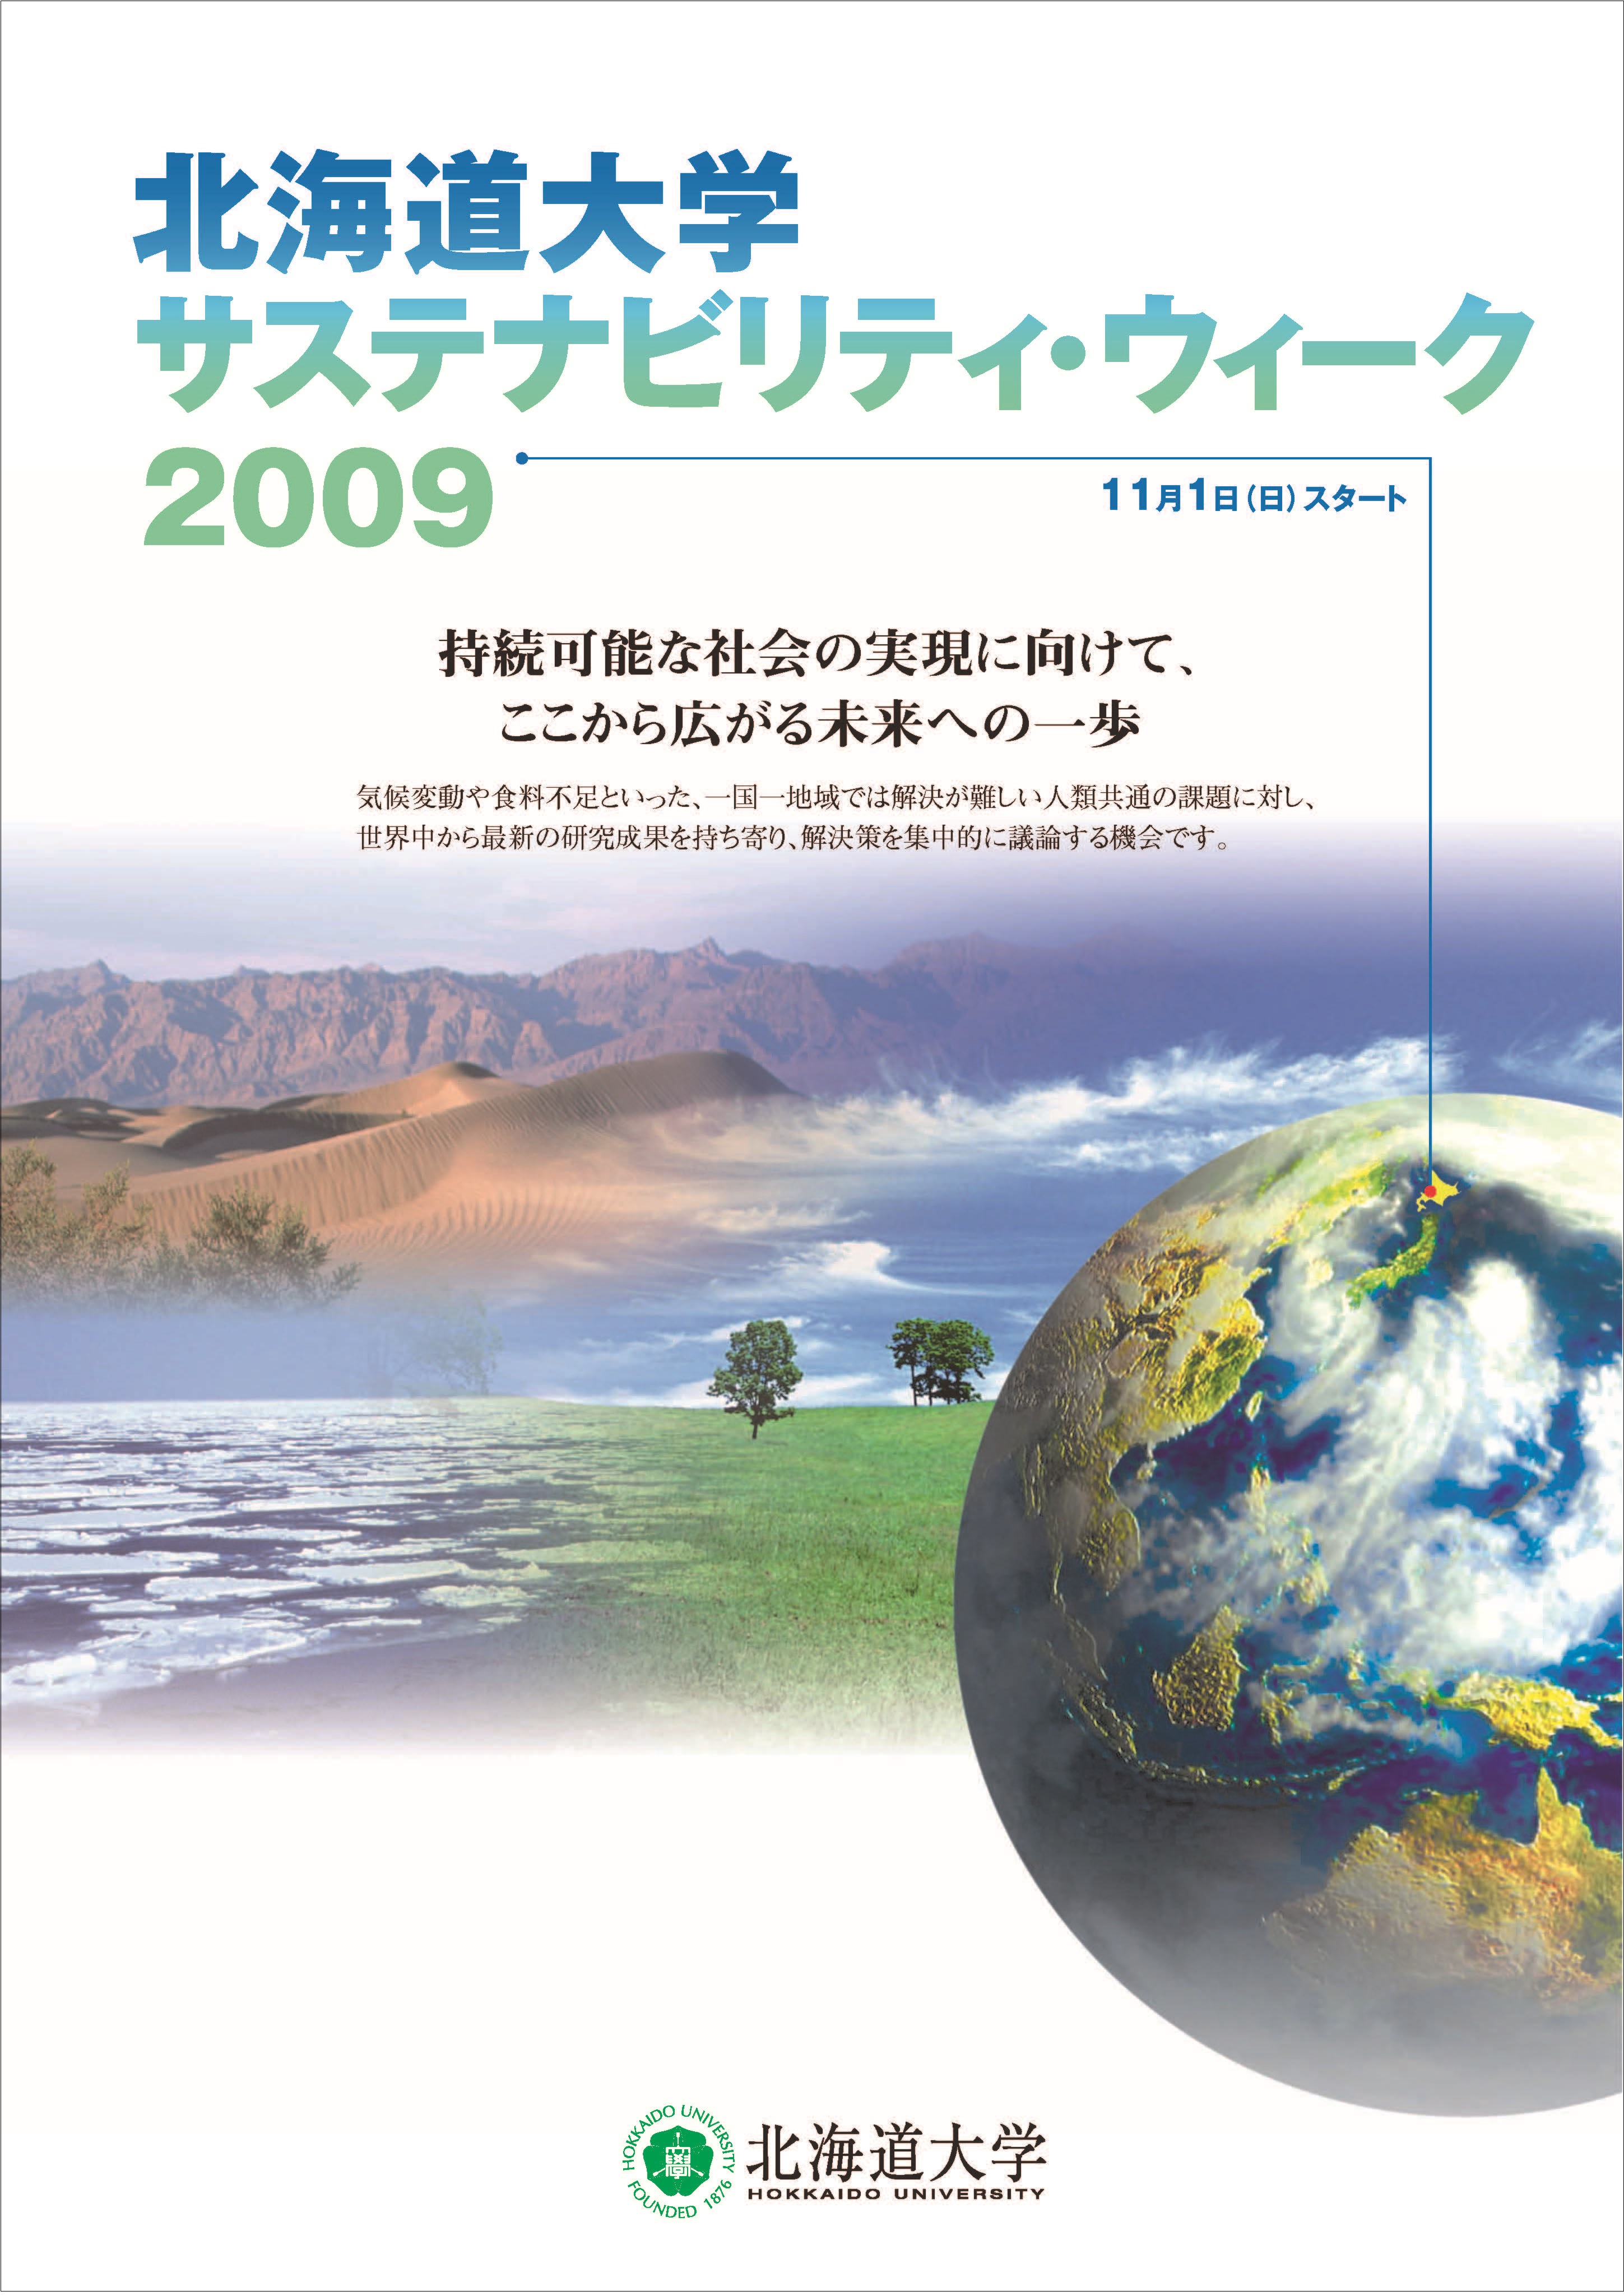 SW2009_パンフレット表紙.jpg